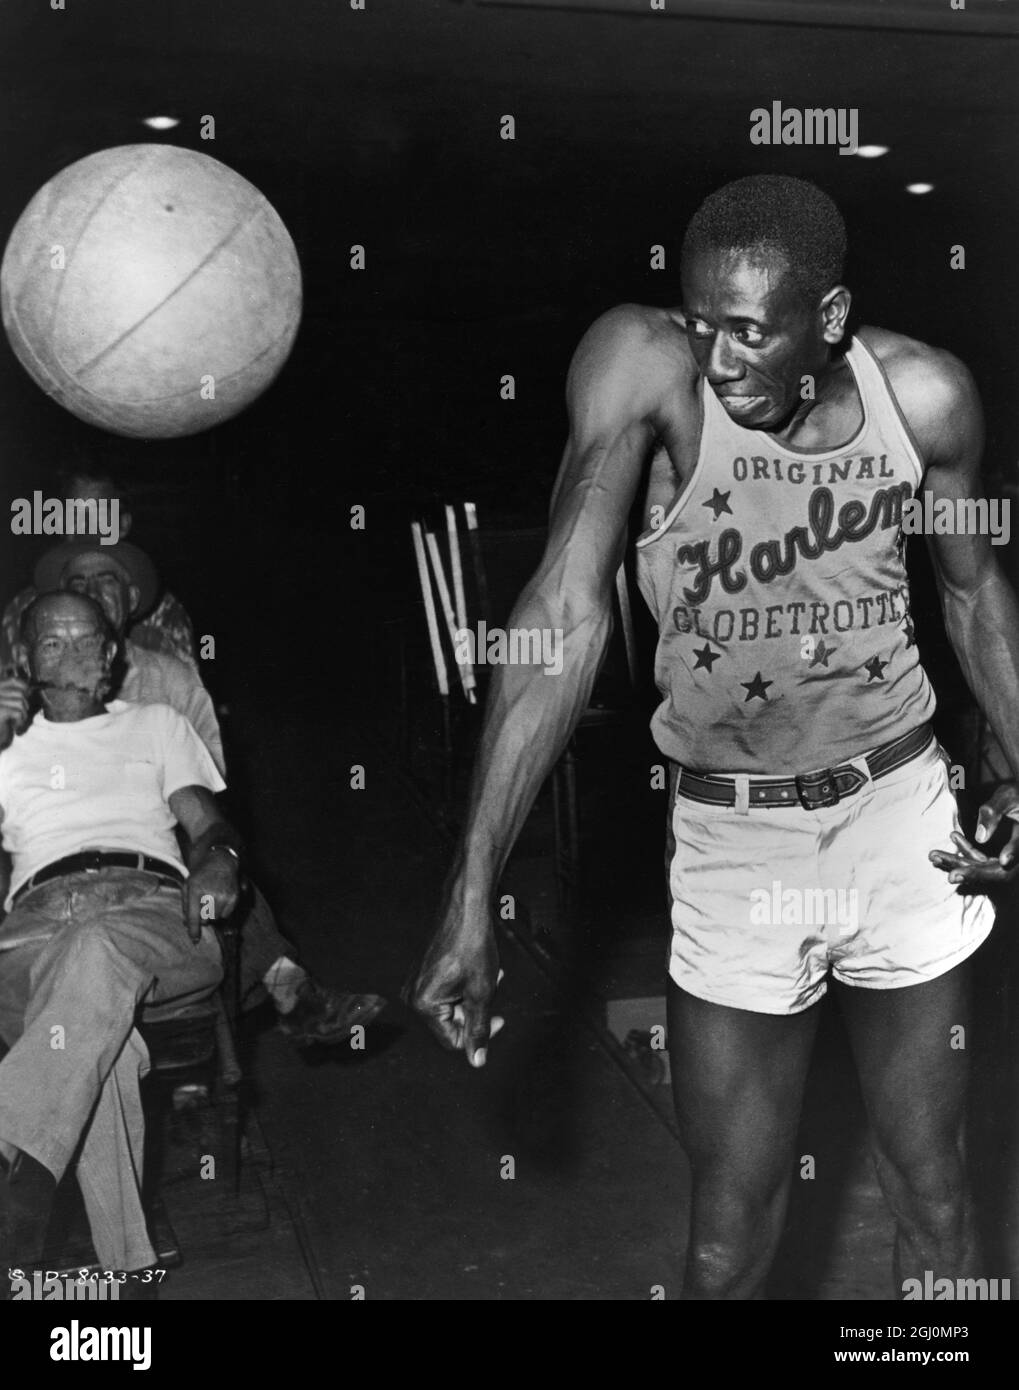 Goose Tatum - miembro campeón del equipo de baloncesto Harlem Globetrotters mostrando uno de sus famosos trucos para los Columbia's Harlem Globetrotters Foto de stock